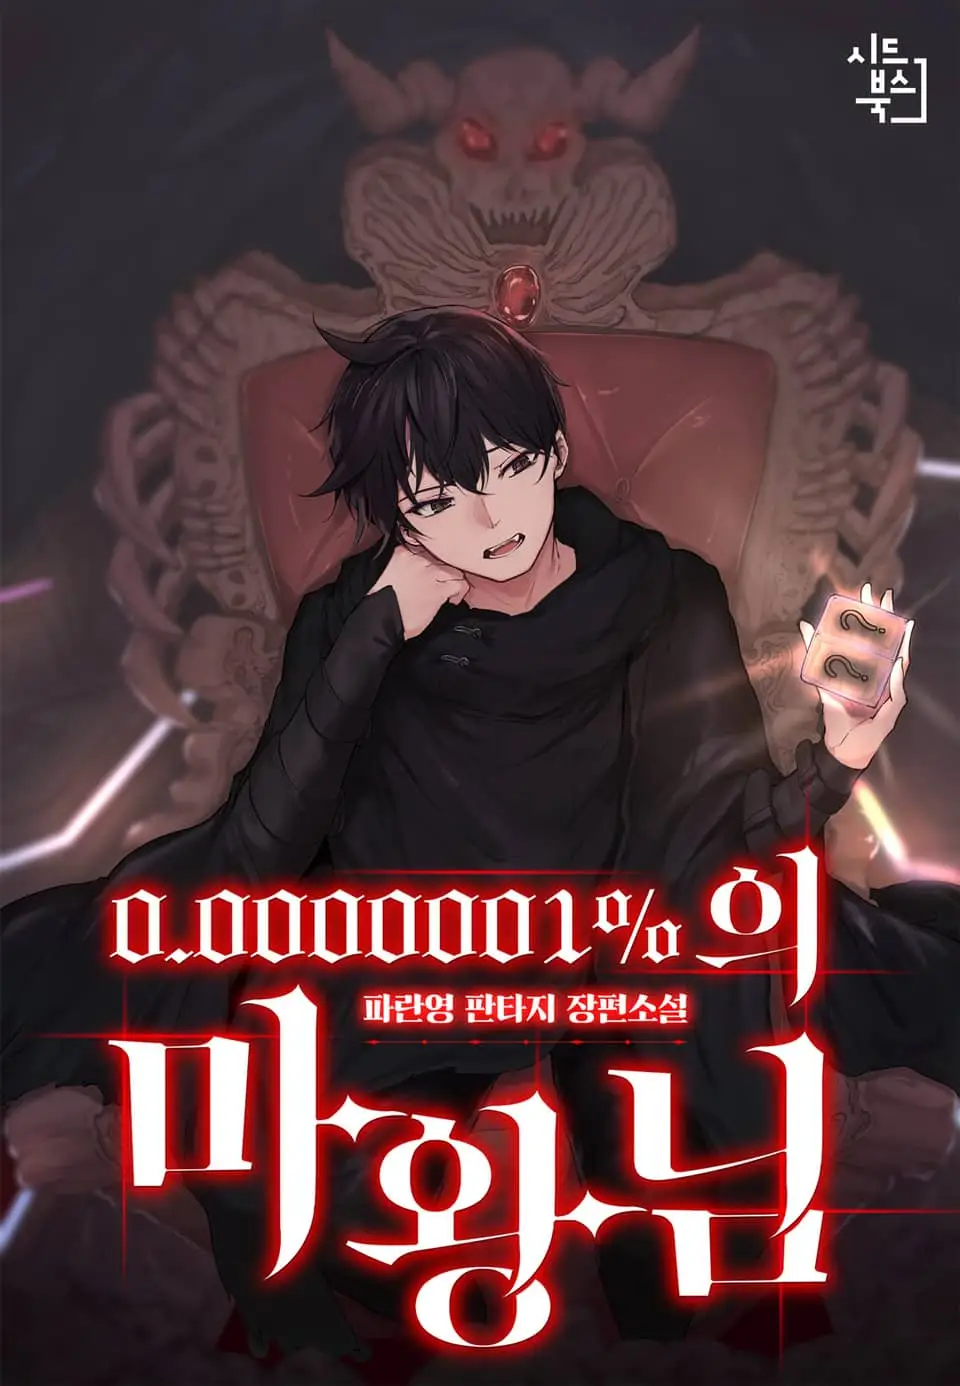 0.0000001% Demon King poster